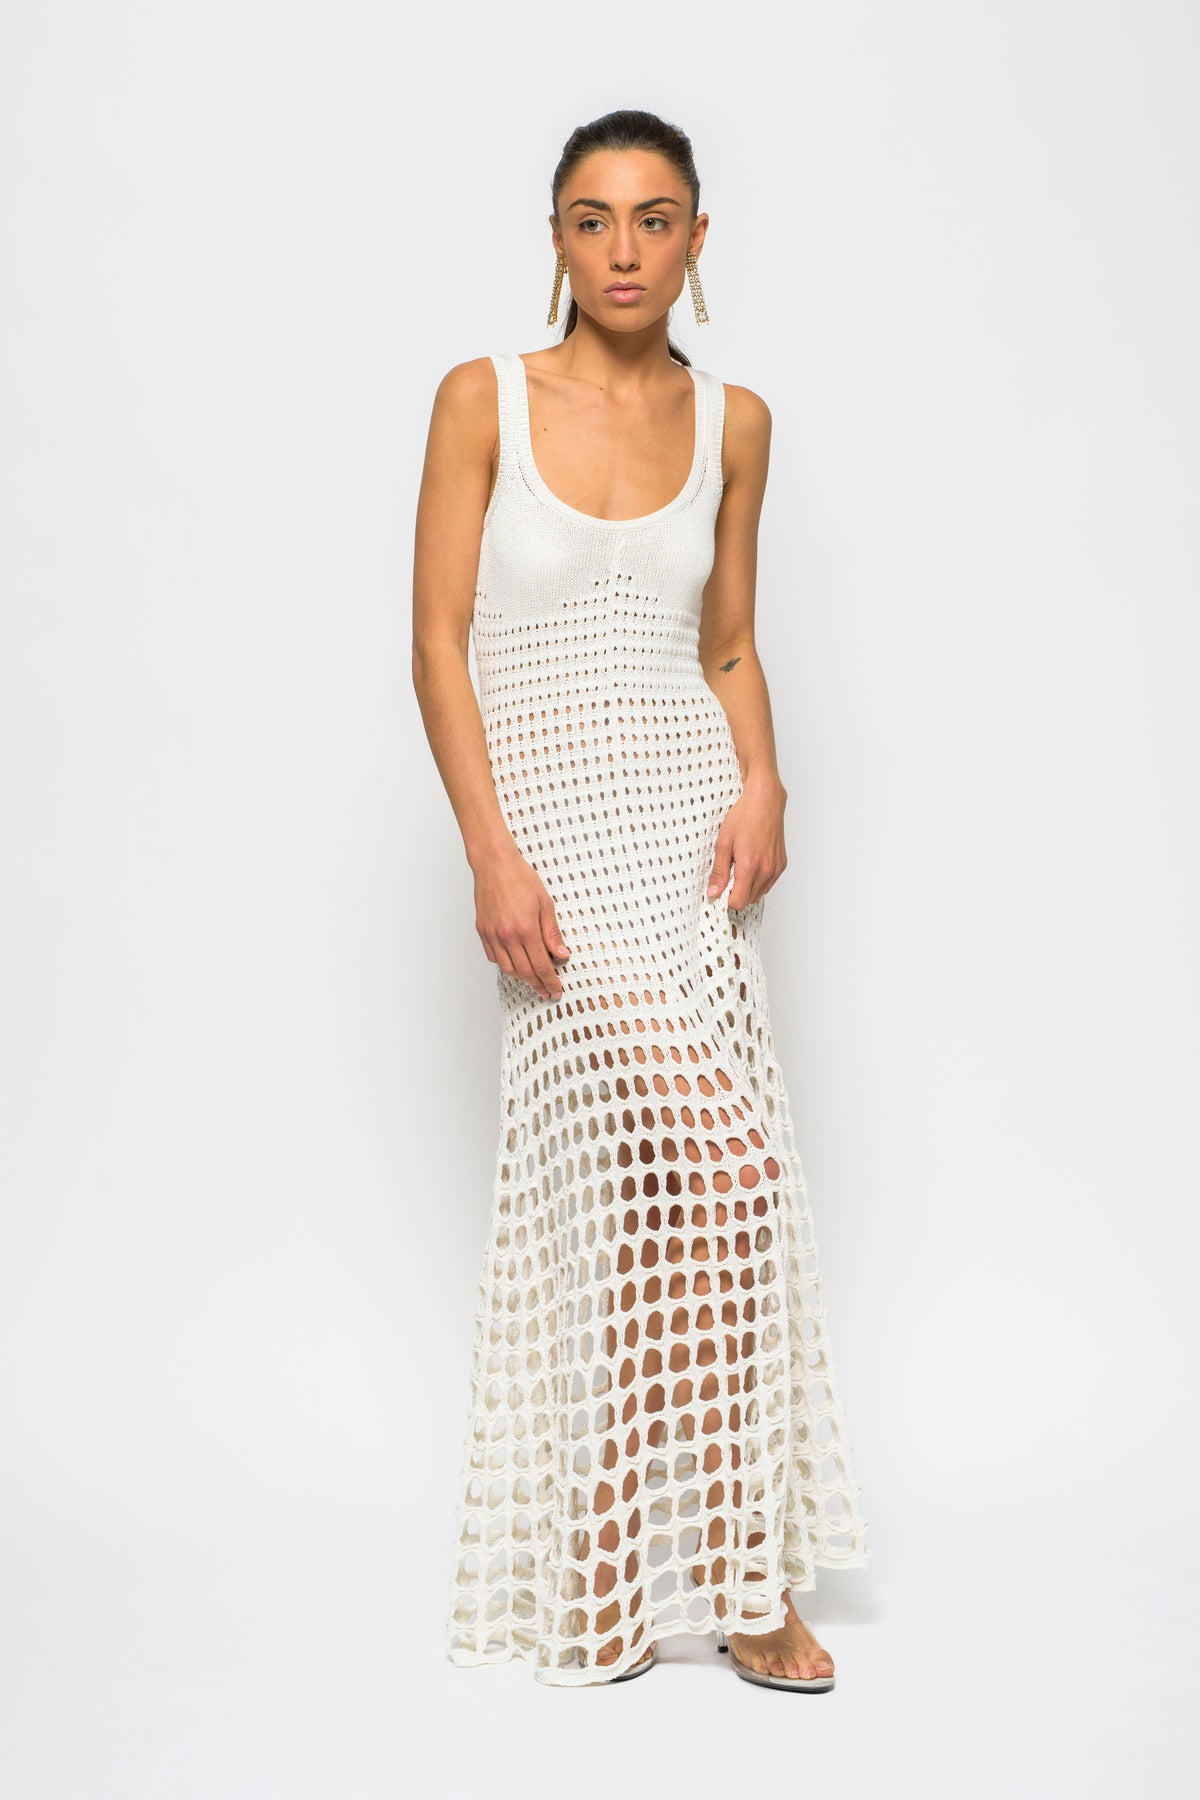 Chloe White Crochet Dress